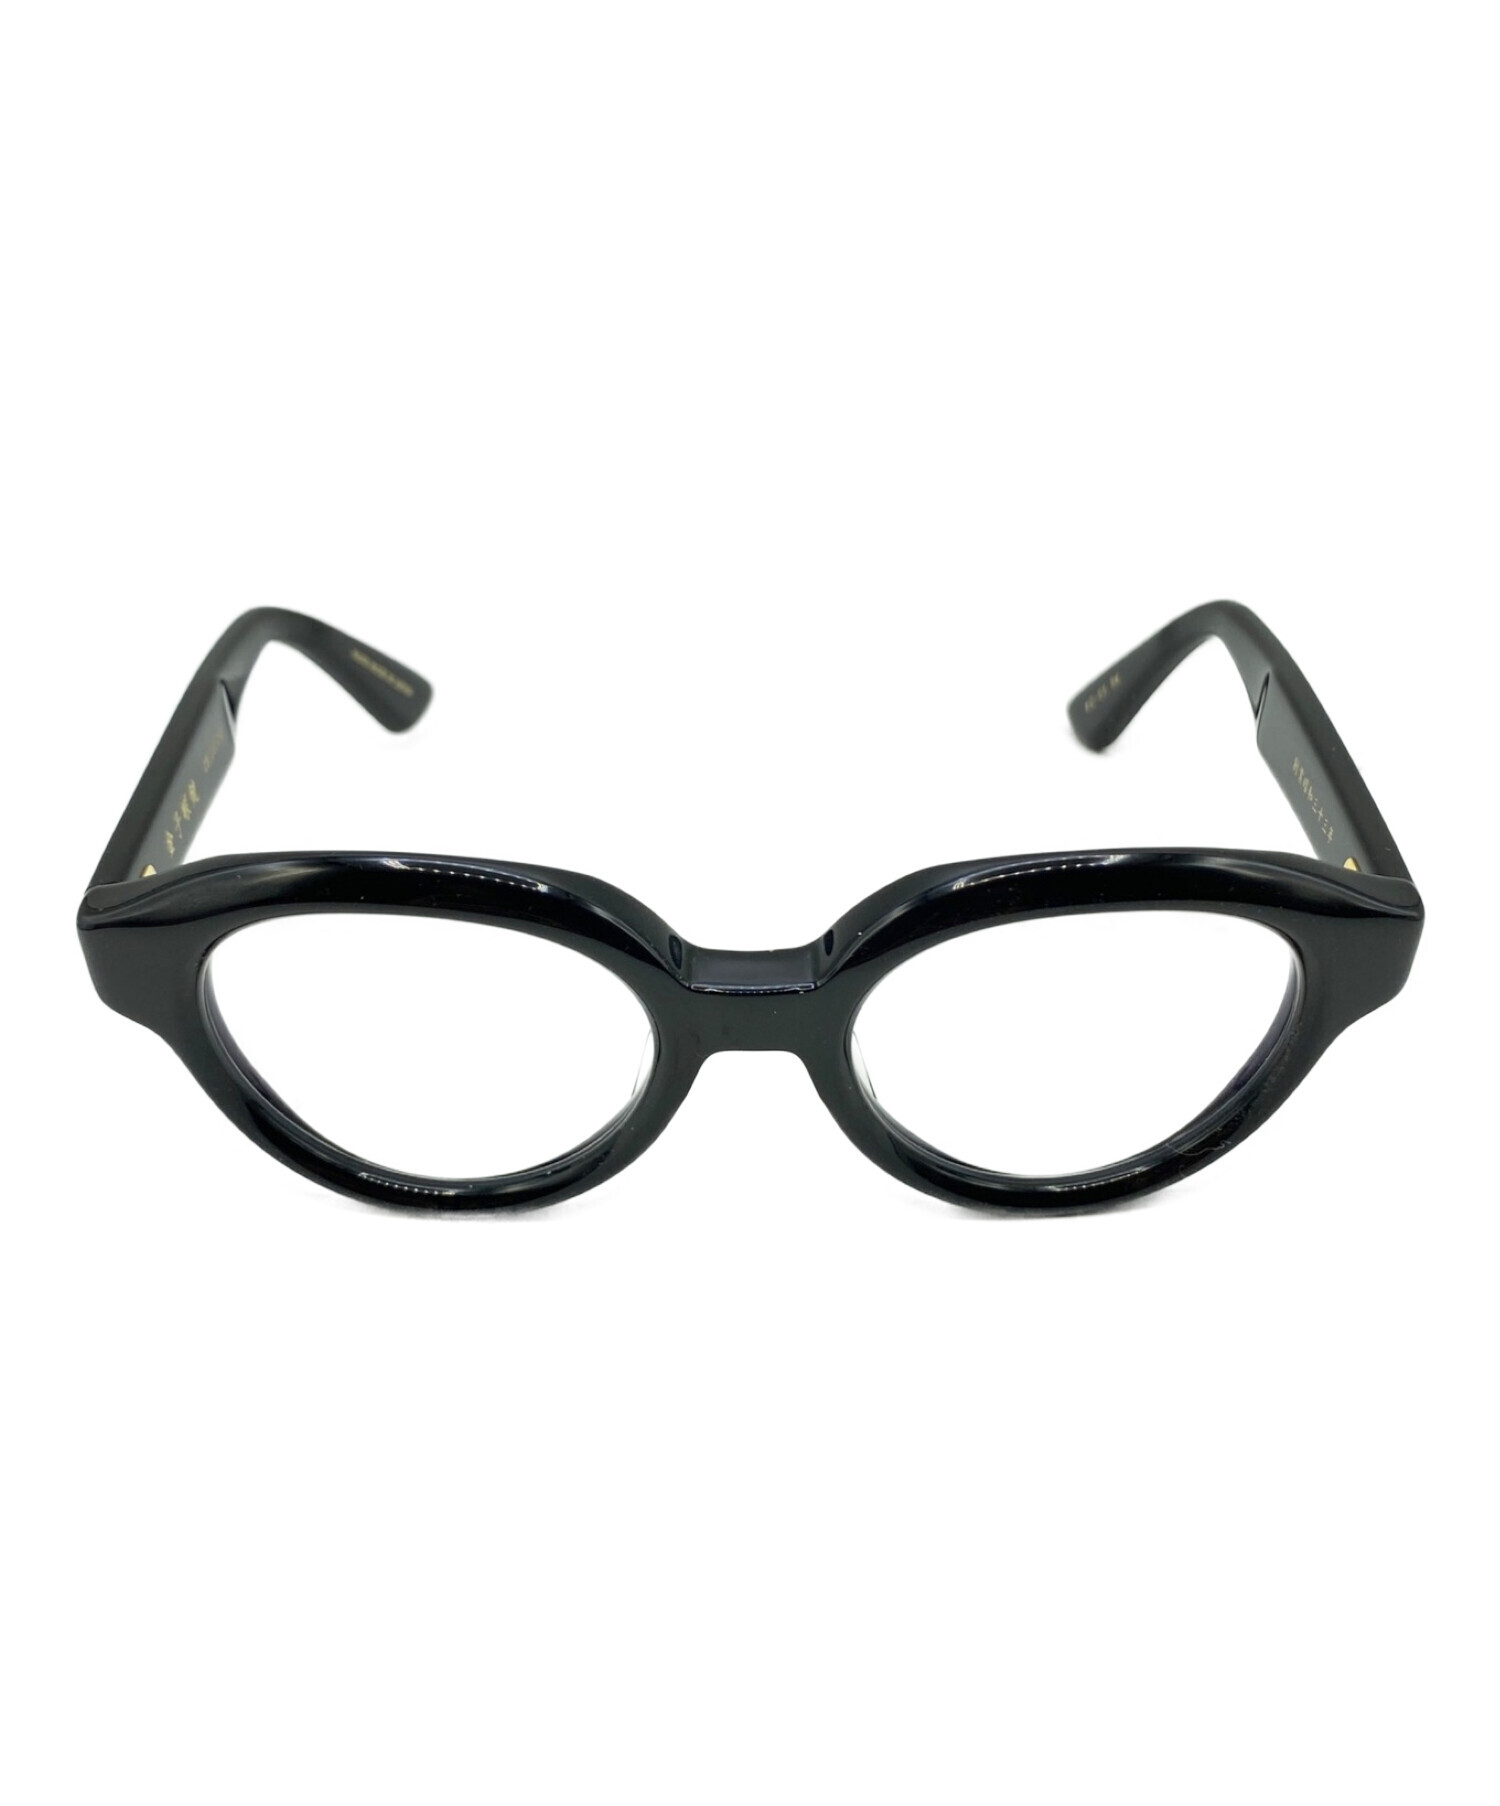 【販売卸売】新品未使用 金子眼鏡 KA-55 サングラス/メガネ